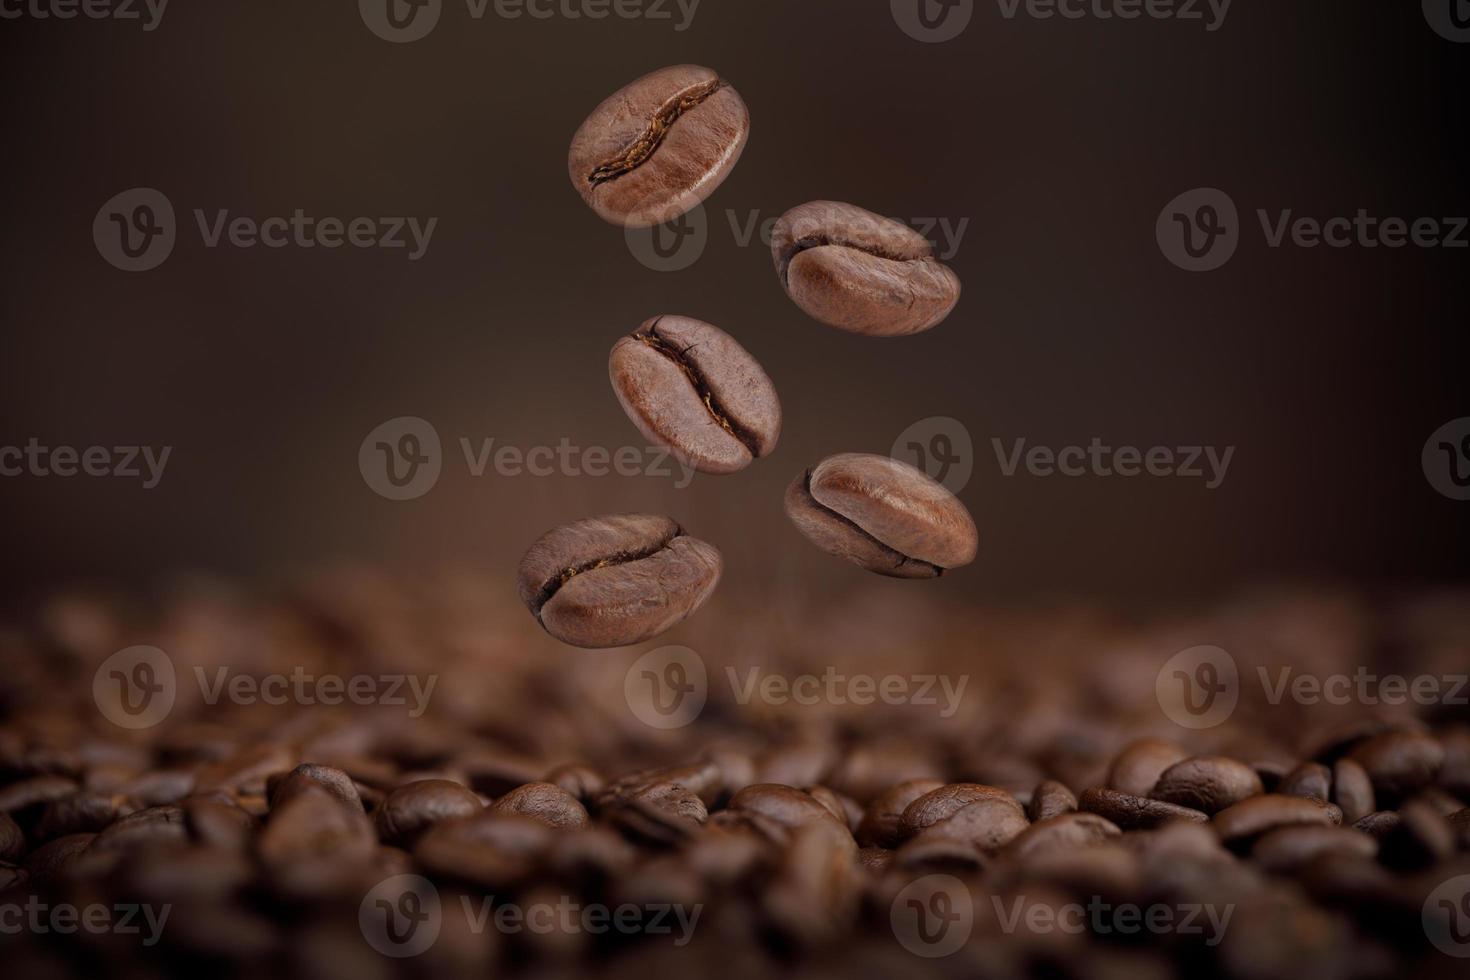 le chaud des grains de café torréfiés bruns tombant de l'air sur fond marron, produits sains par concept d'ingrédients naturels biologiques photo